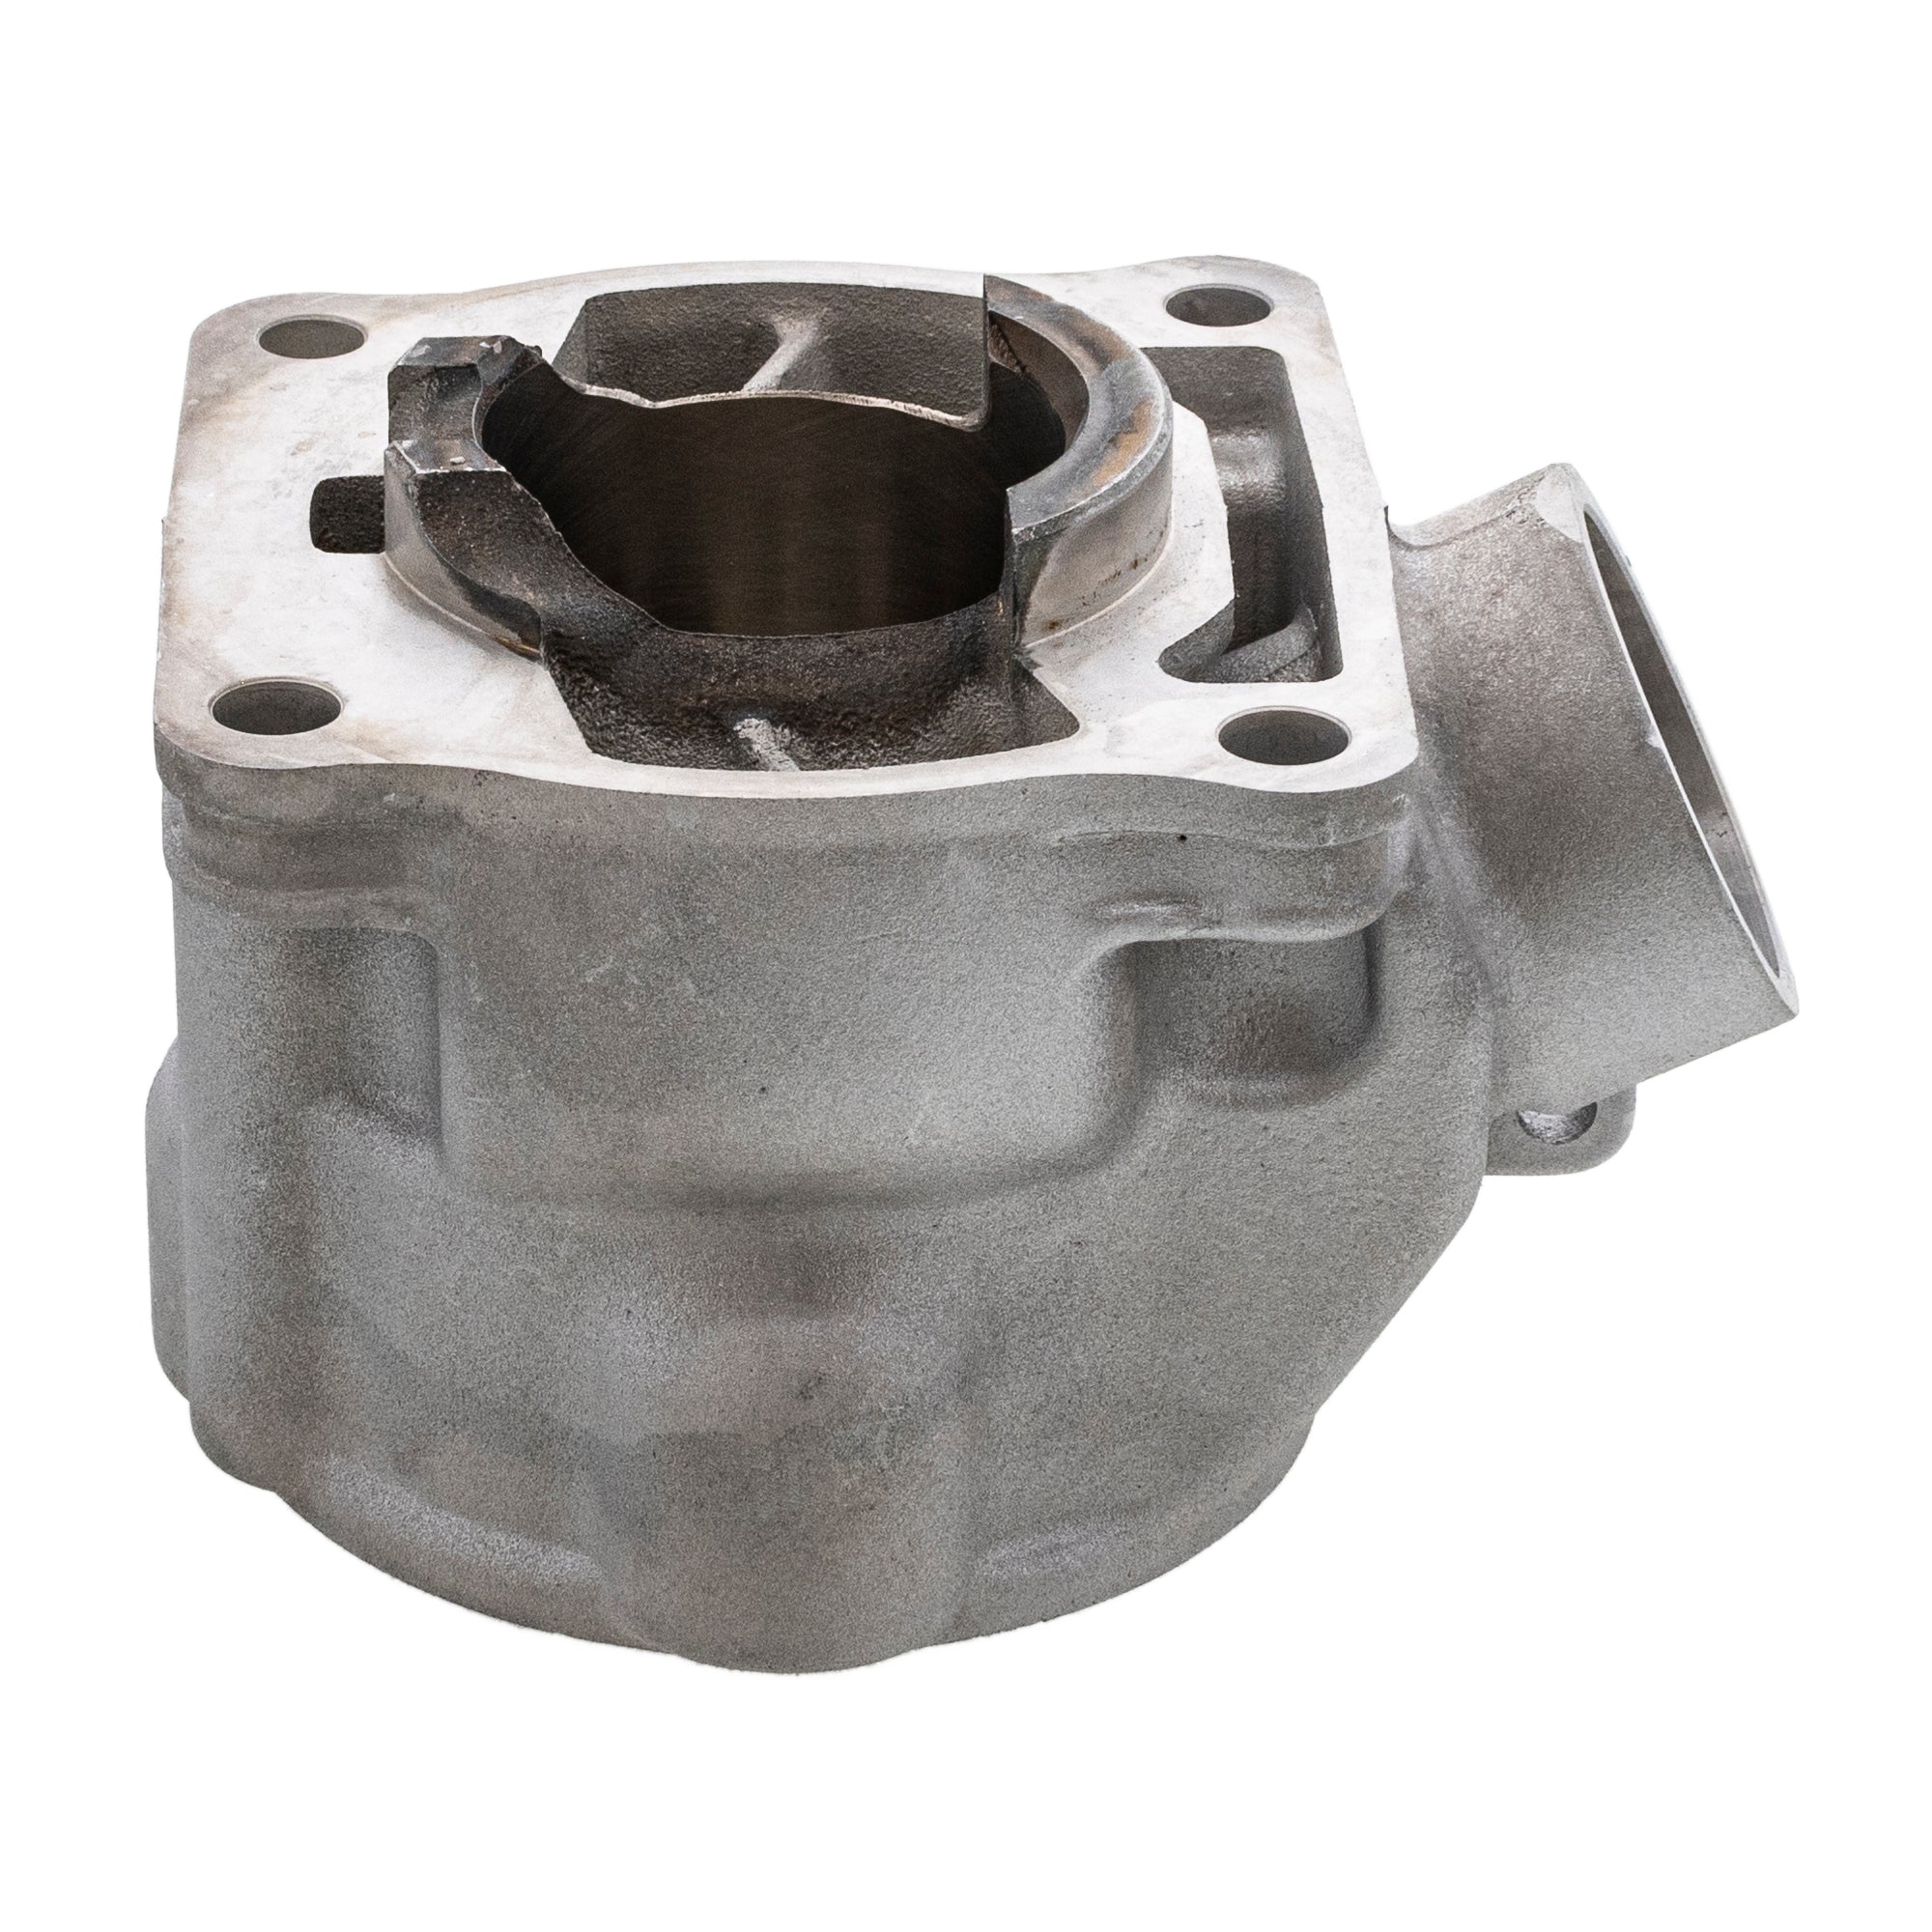 Engine Cylinder For Yamaha 5PA-11311-30-00 5PA-11311-20-00 5PA-11311-10-00 5PA-11311-01-00